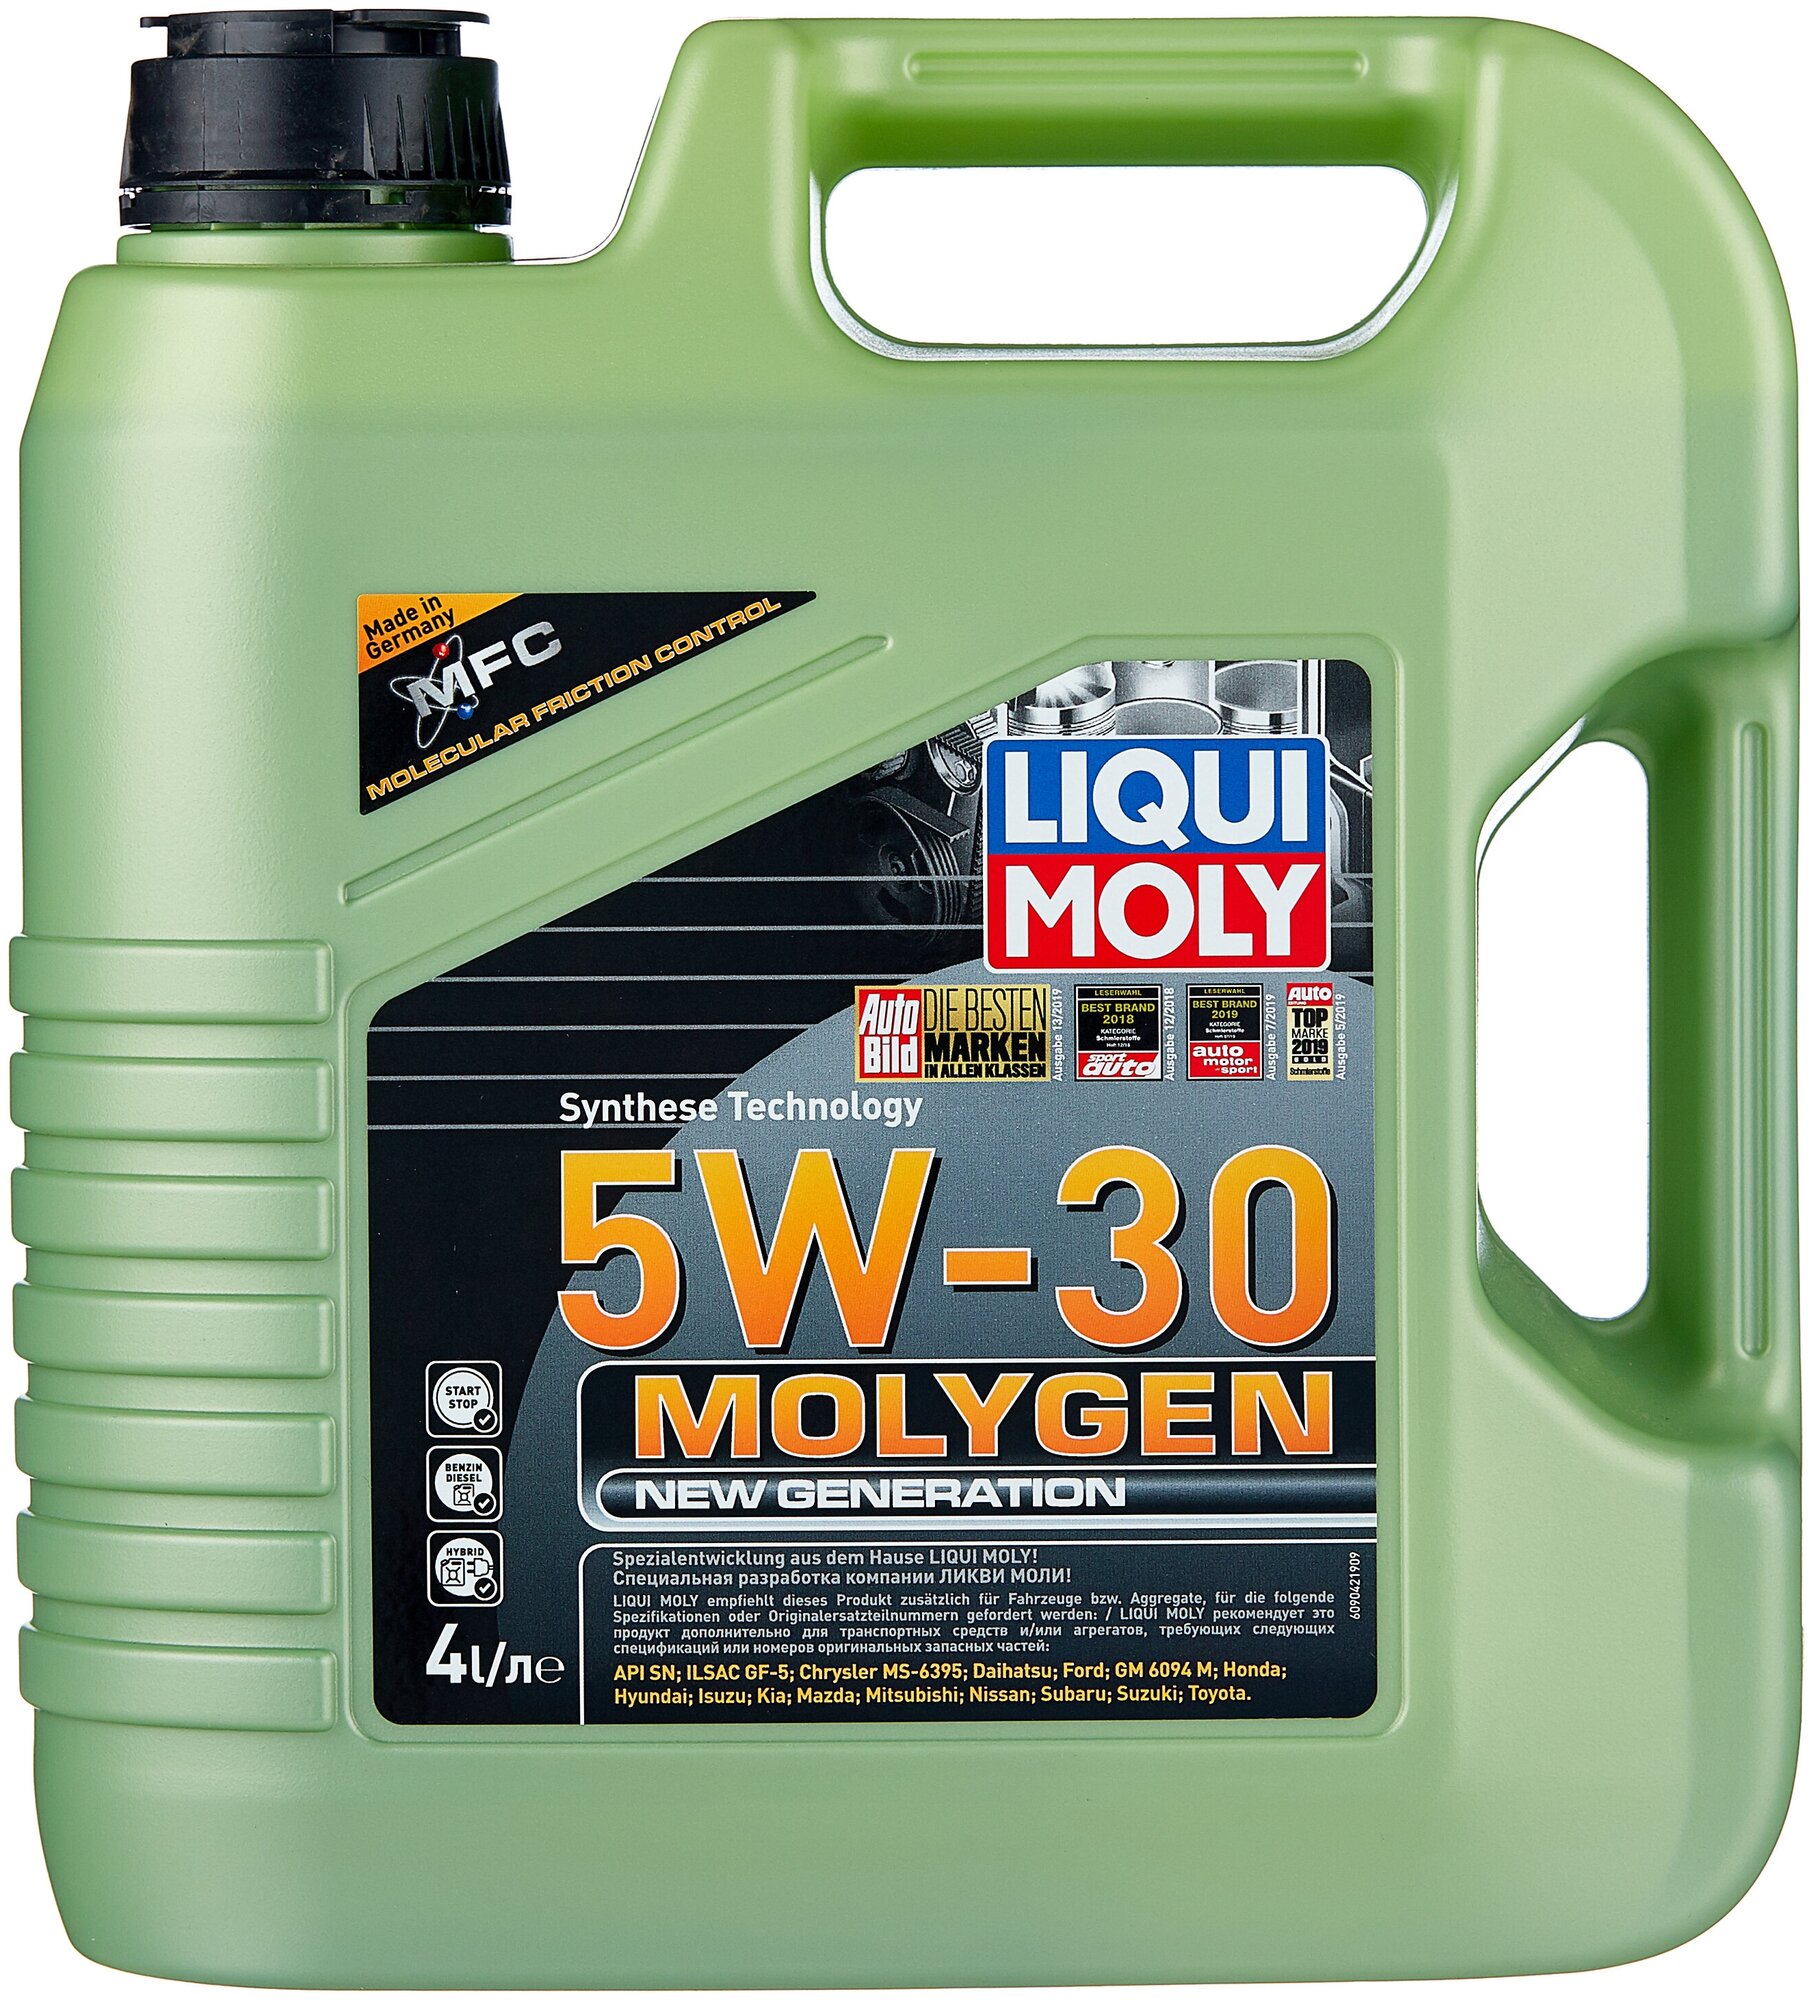 Синтетическое моторное масло LIQUI MOLY Molygen New Generation 5W-30, 4 л, 3.6 кг, 1 шт